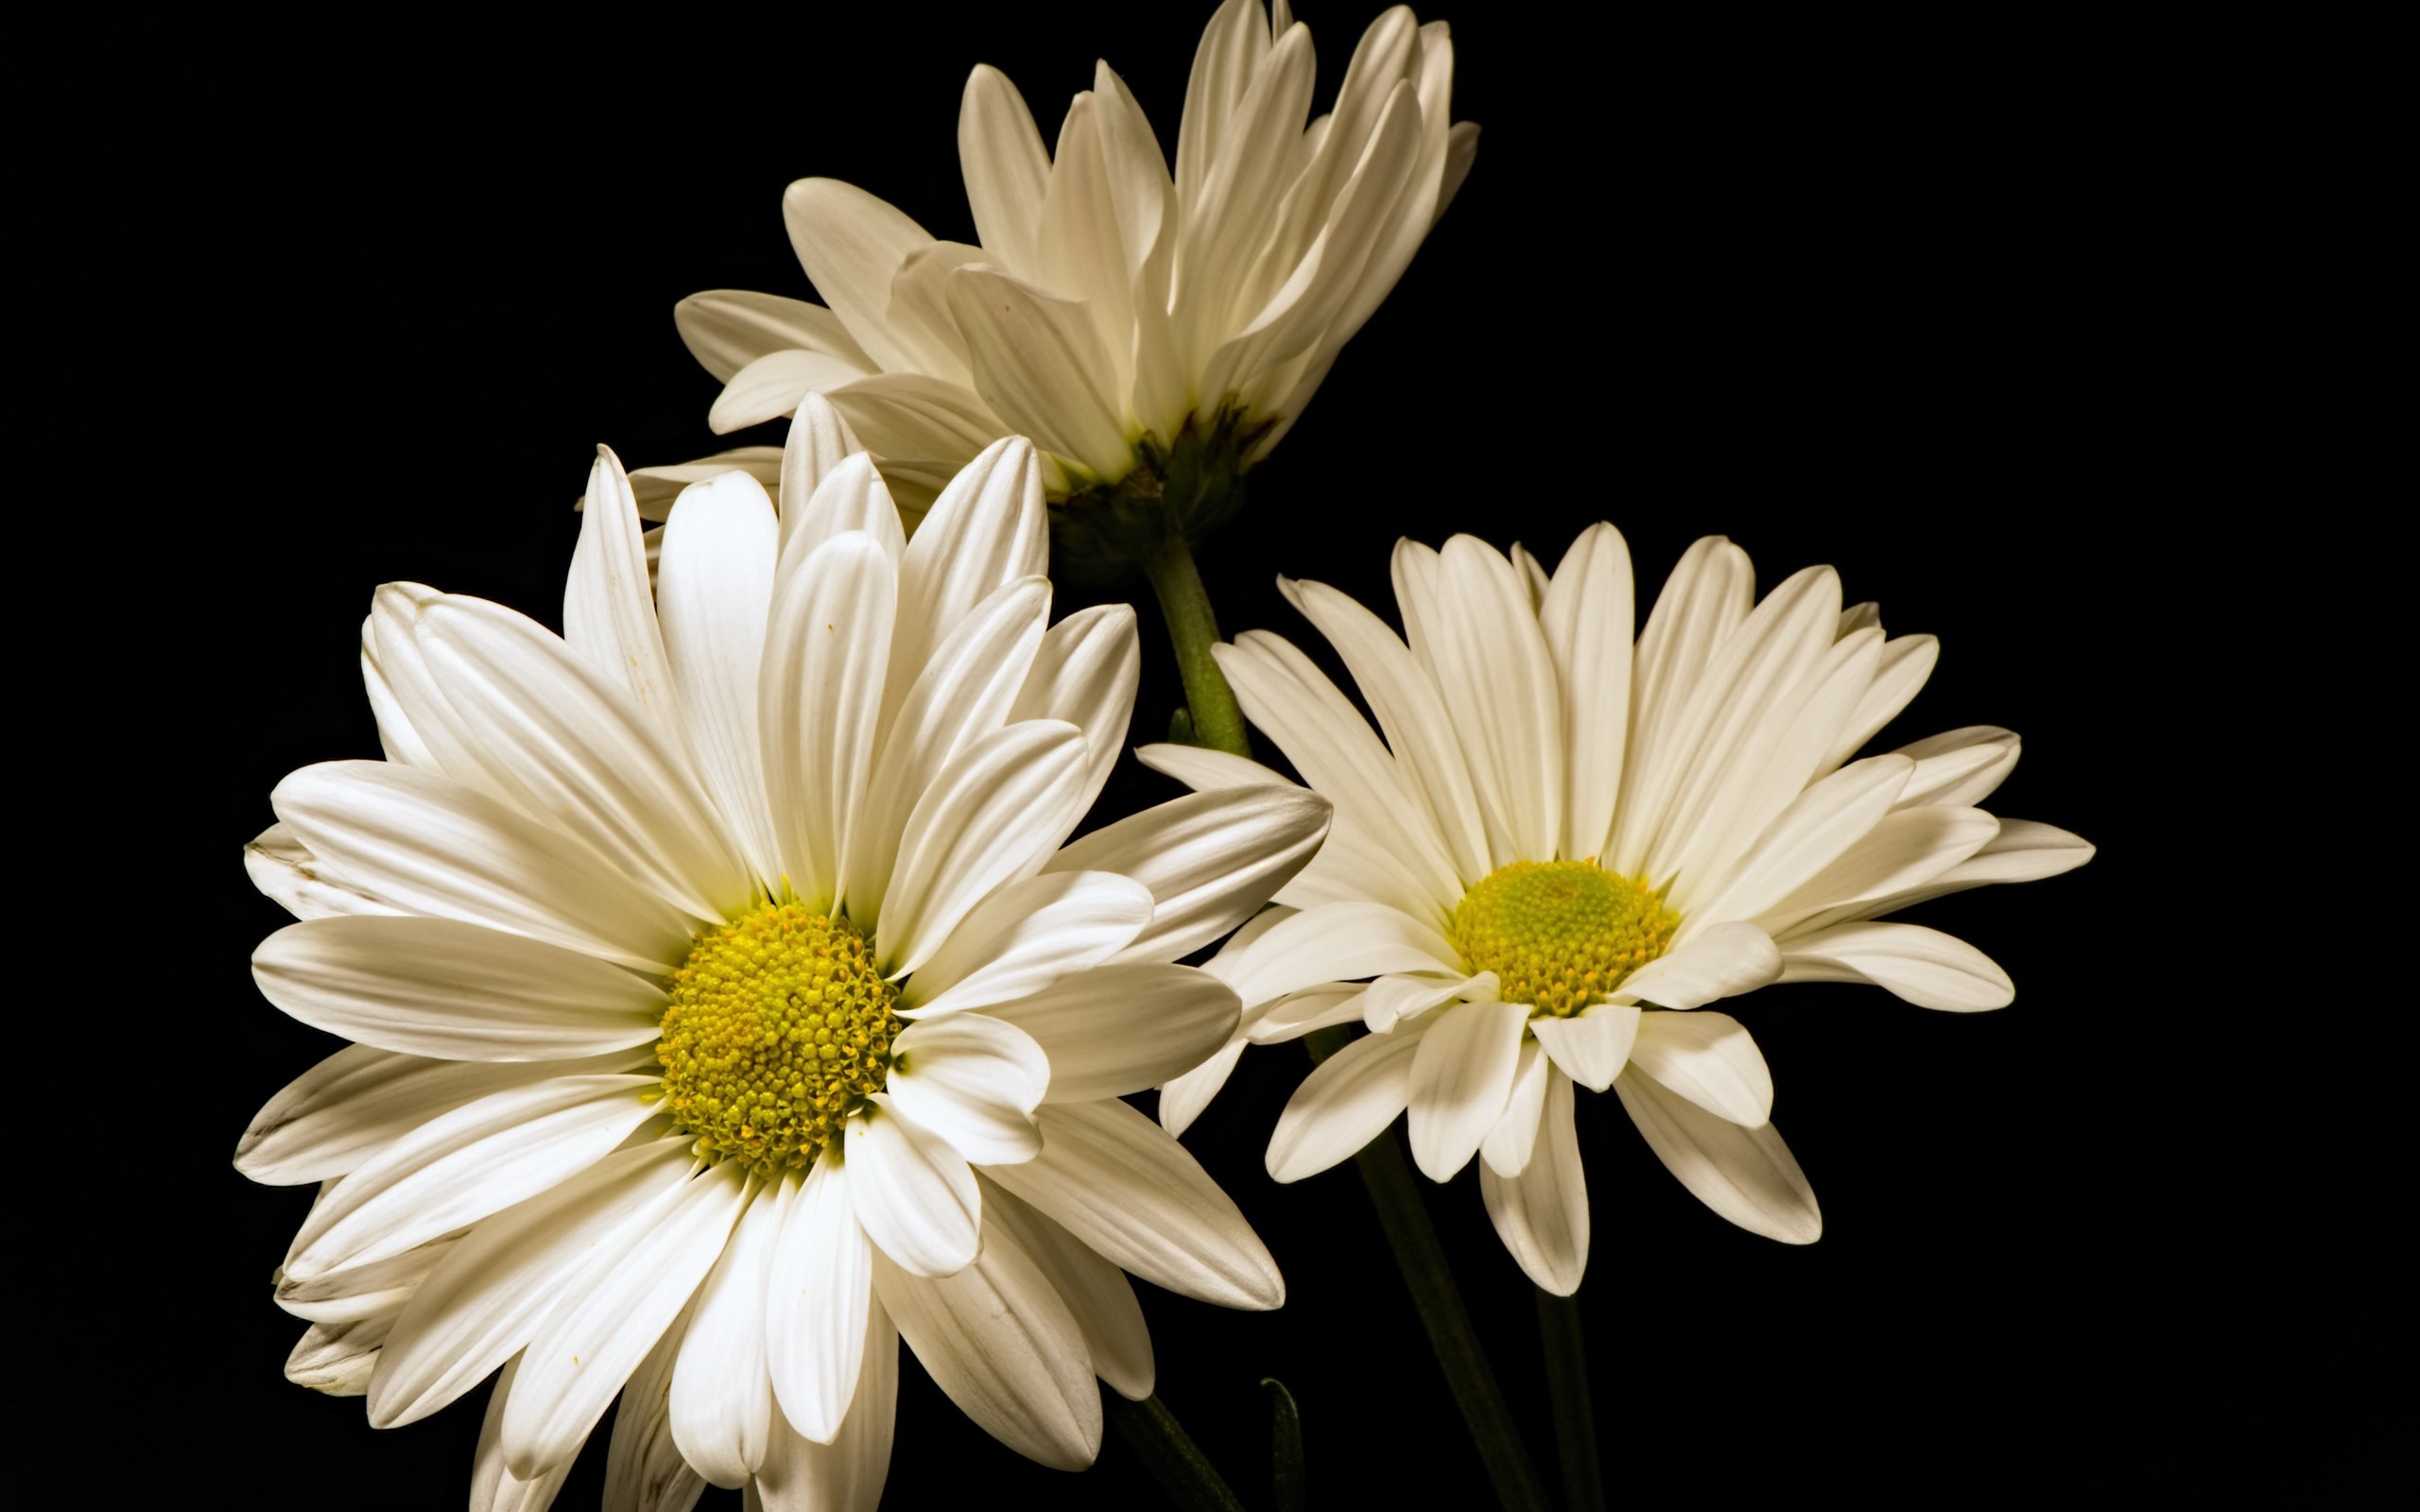 Hình ảnh hoa cúc trắng nền đen đẹp tuyệt